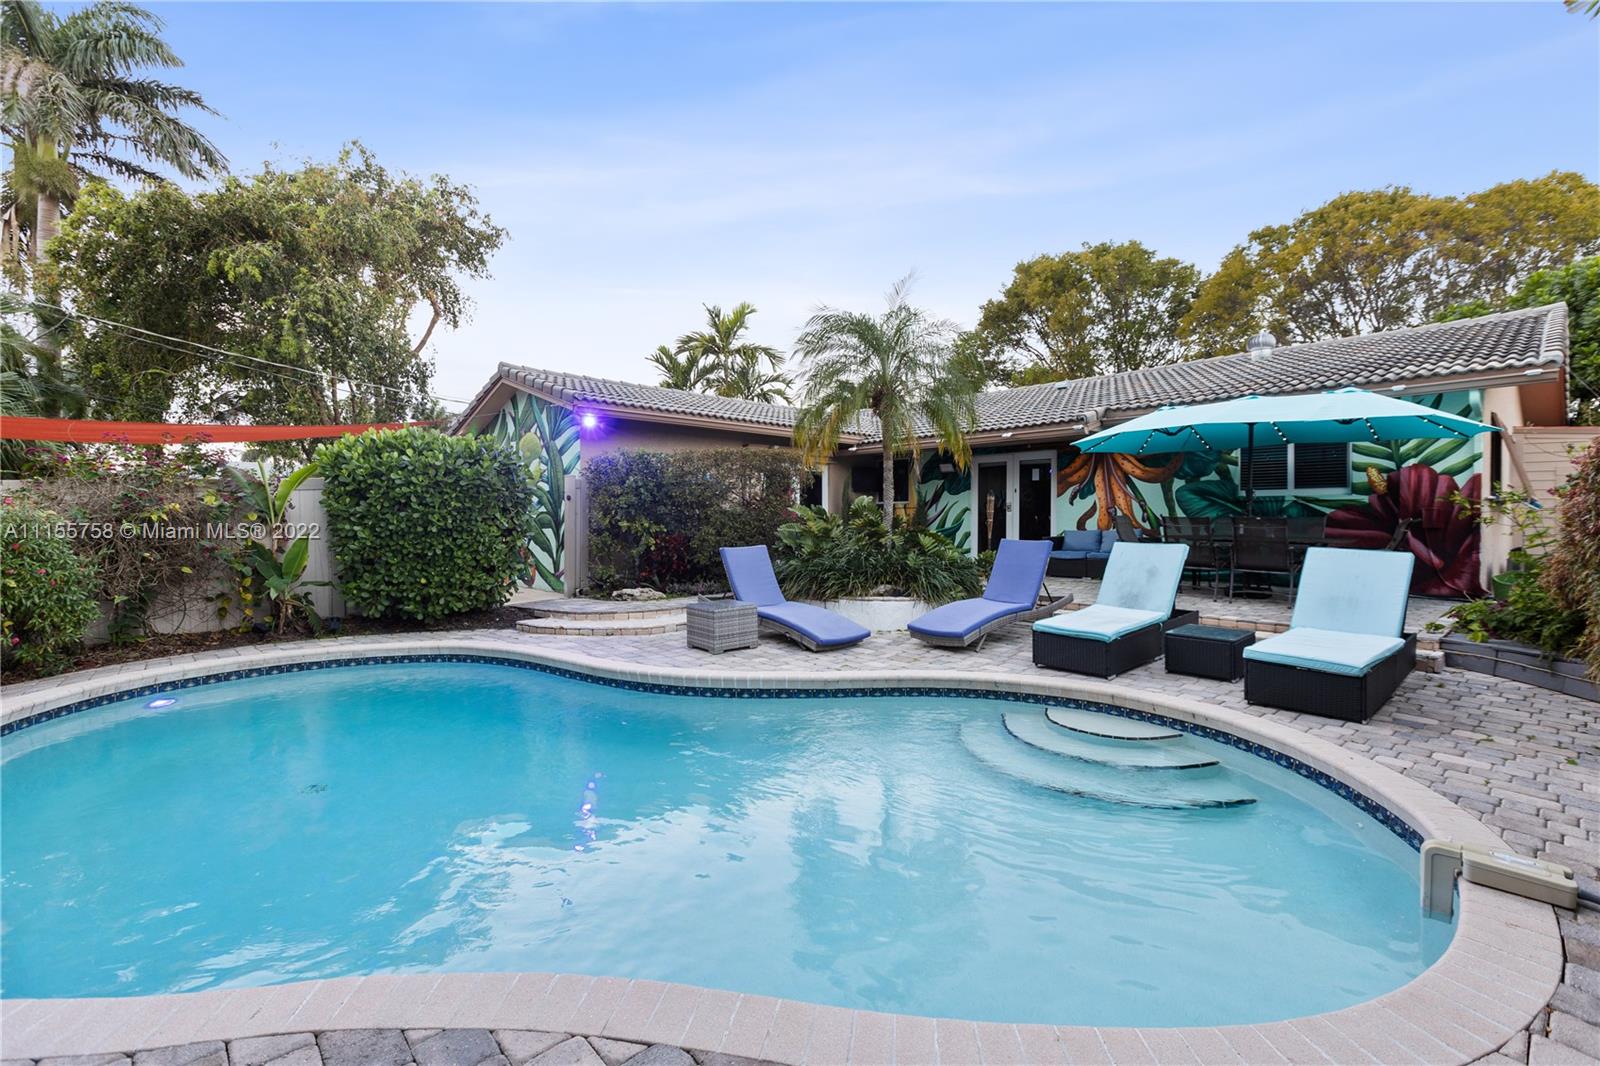 Rental Property at 418 Se 3rd Ter, Dania Beach, Miami-Dade County, Florida - Bedrooms: 4 
Bathrooms: 3  - $5,000 MO.